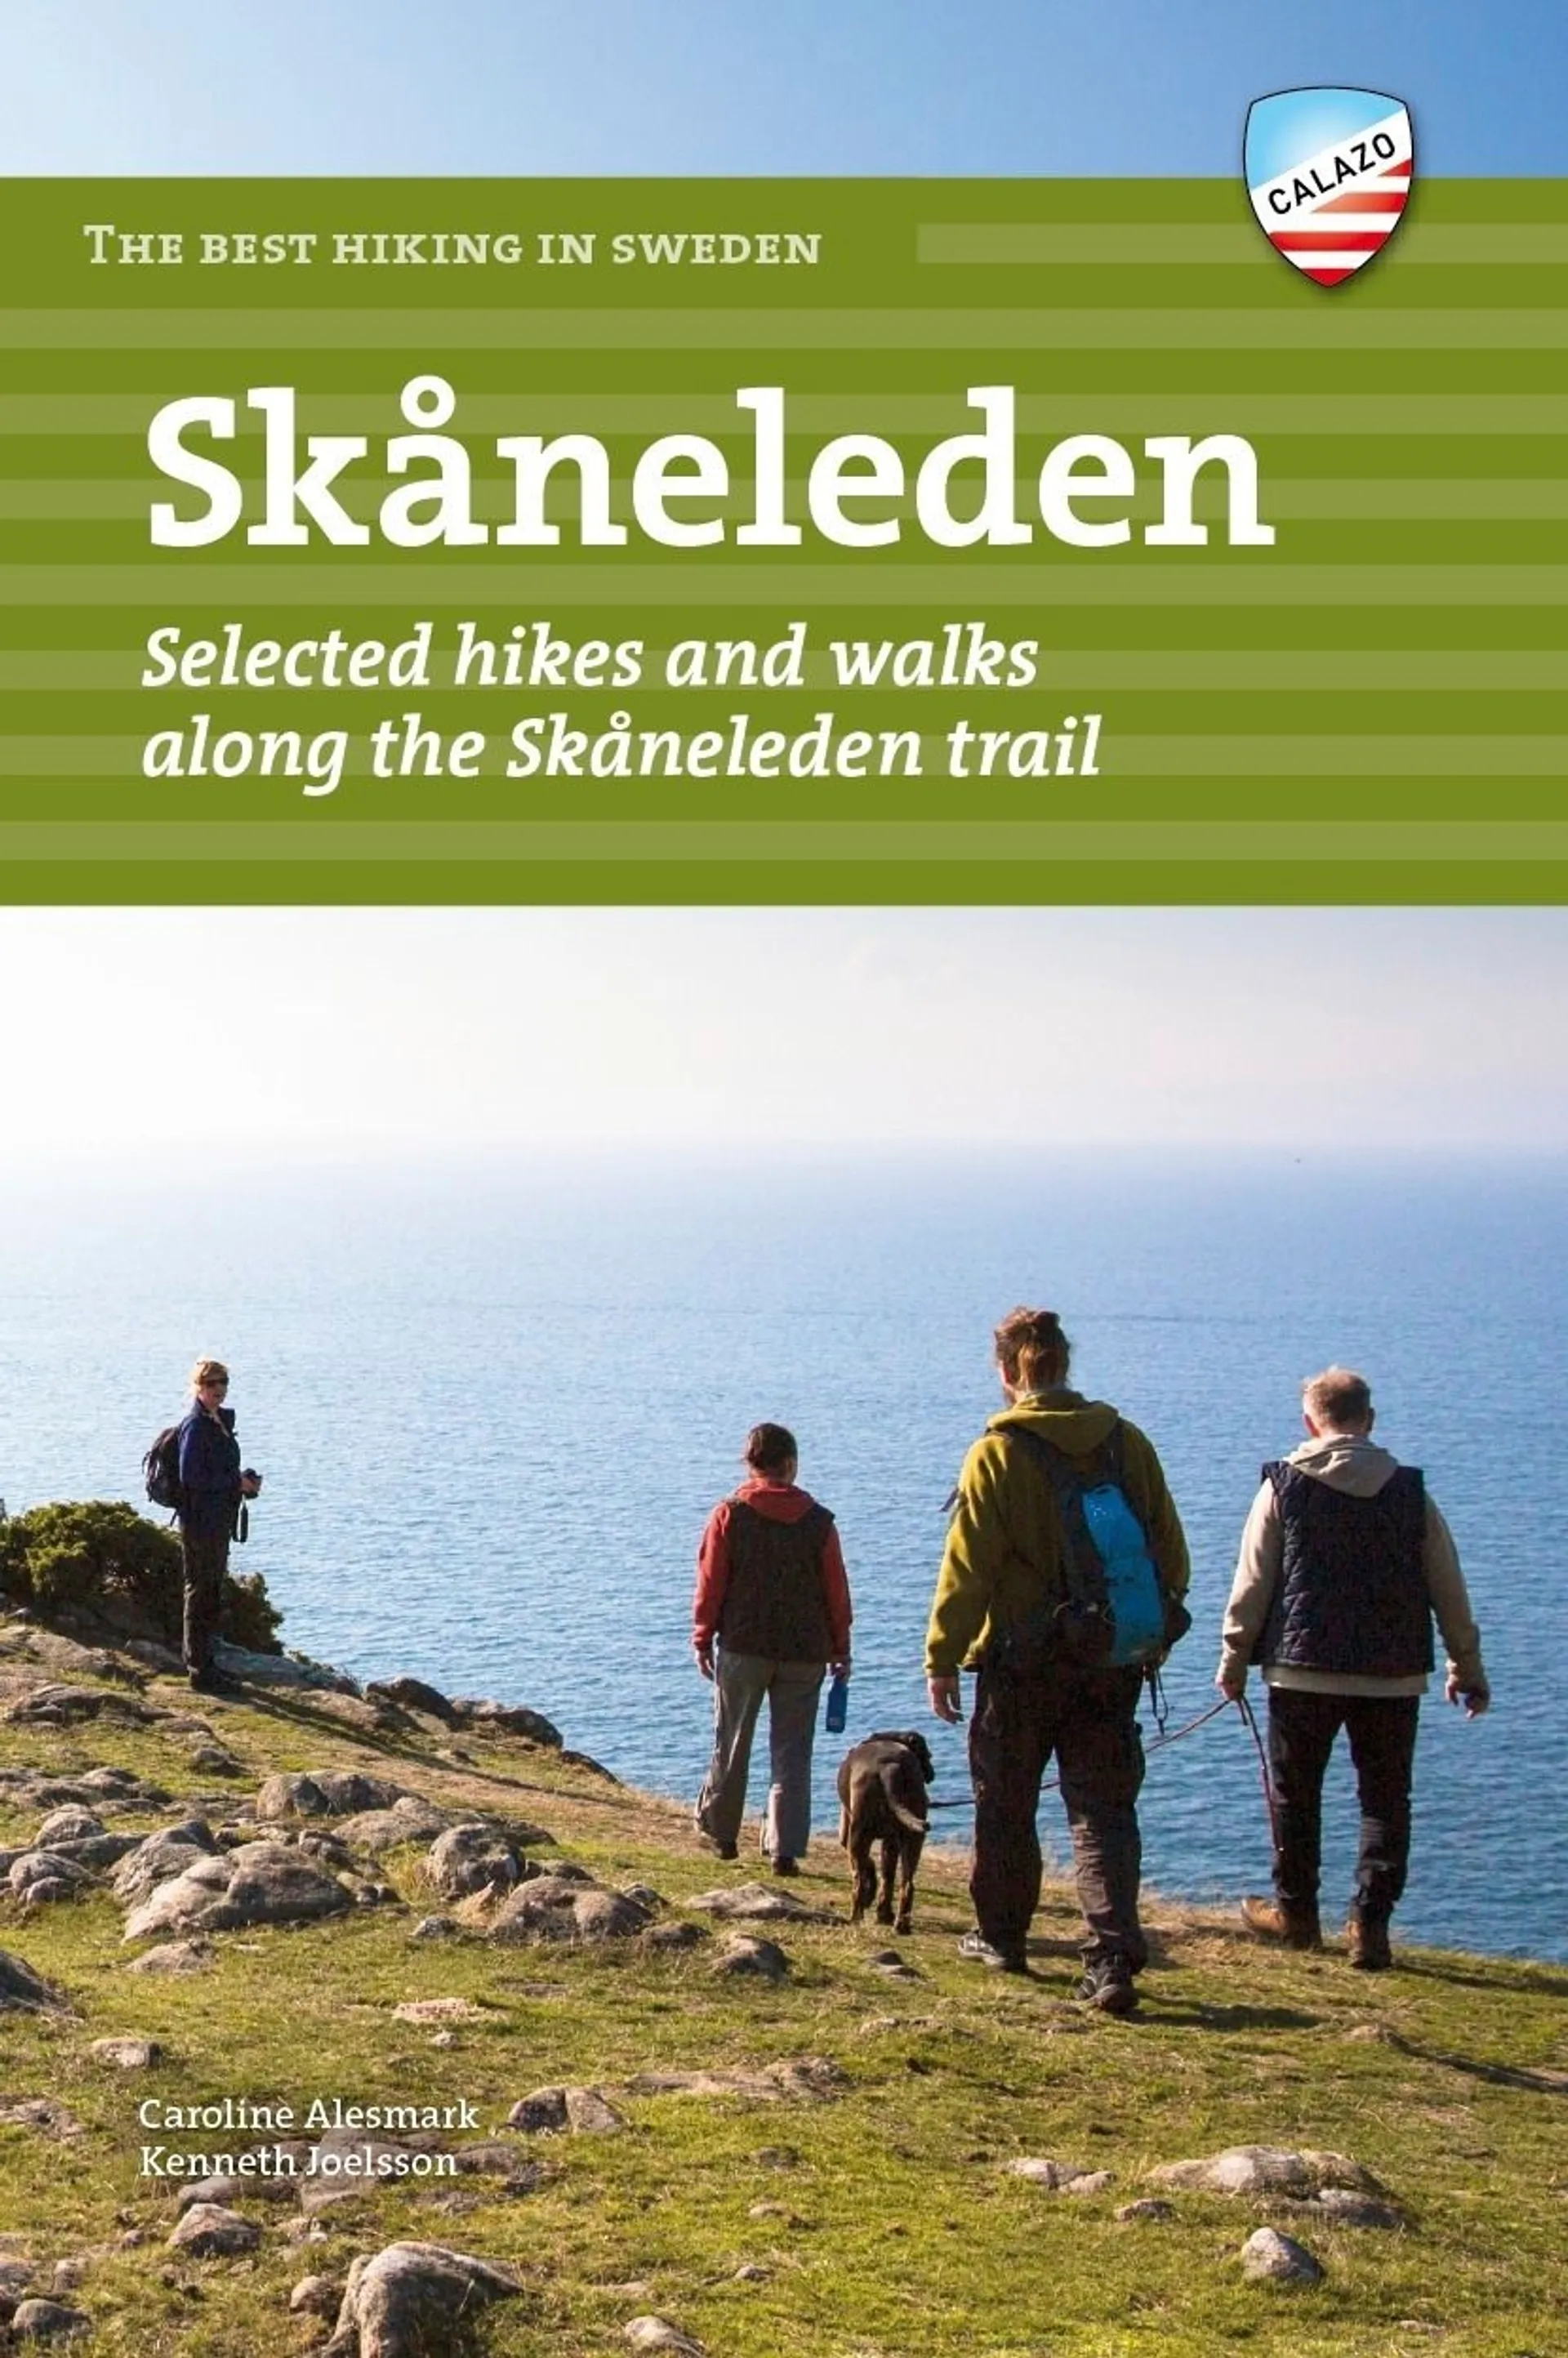 Alesmark, Best hiking in Sweden: Skåneleden